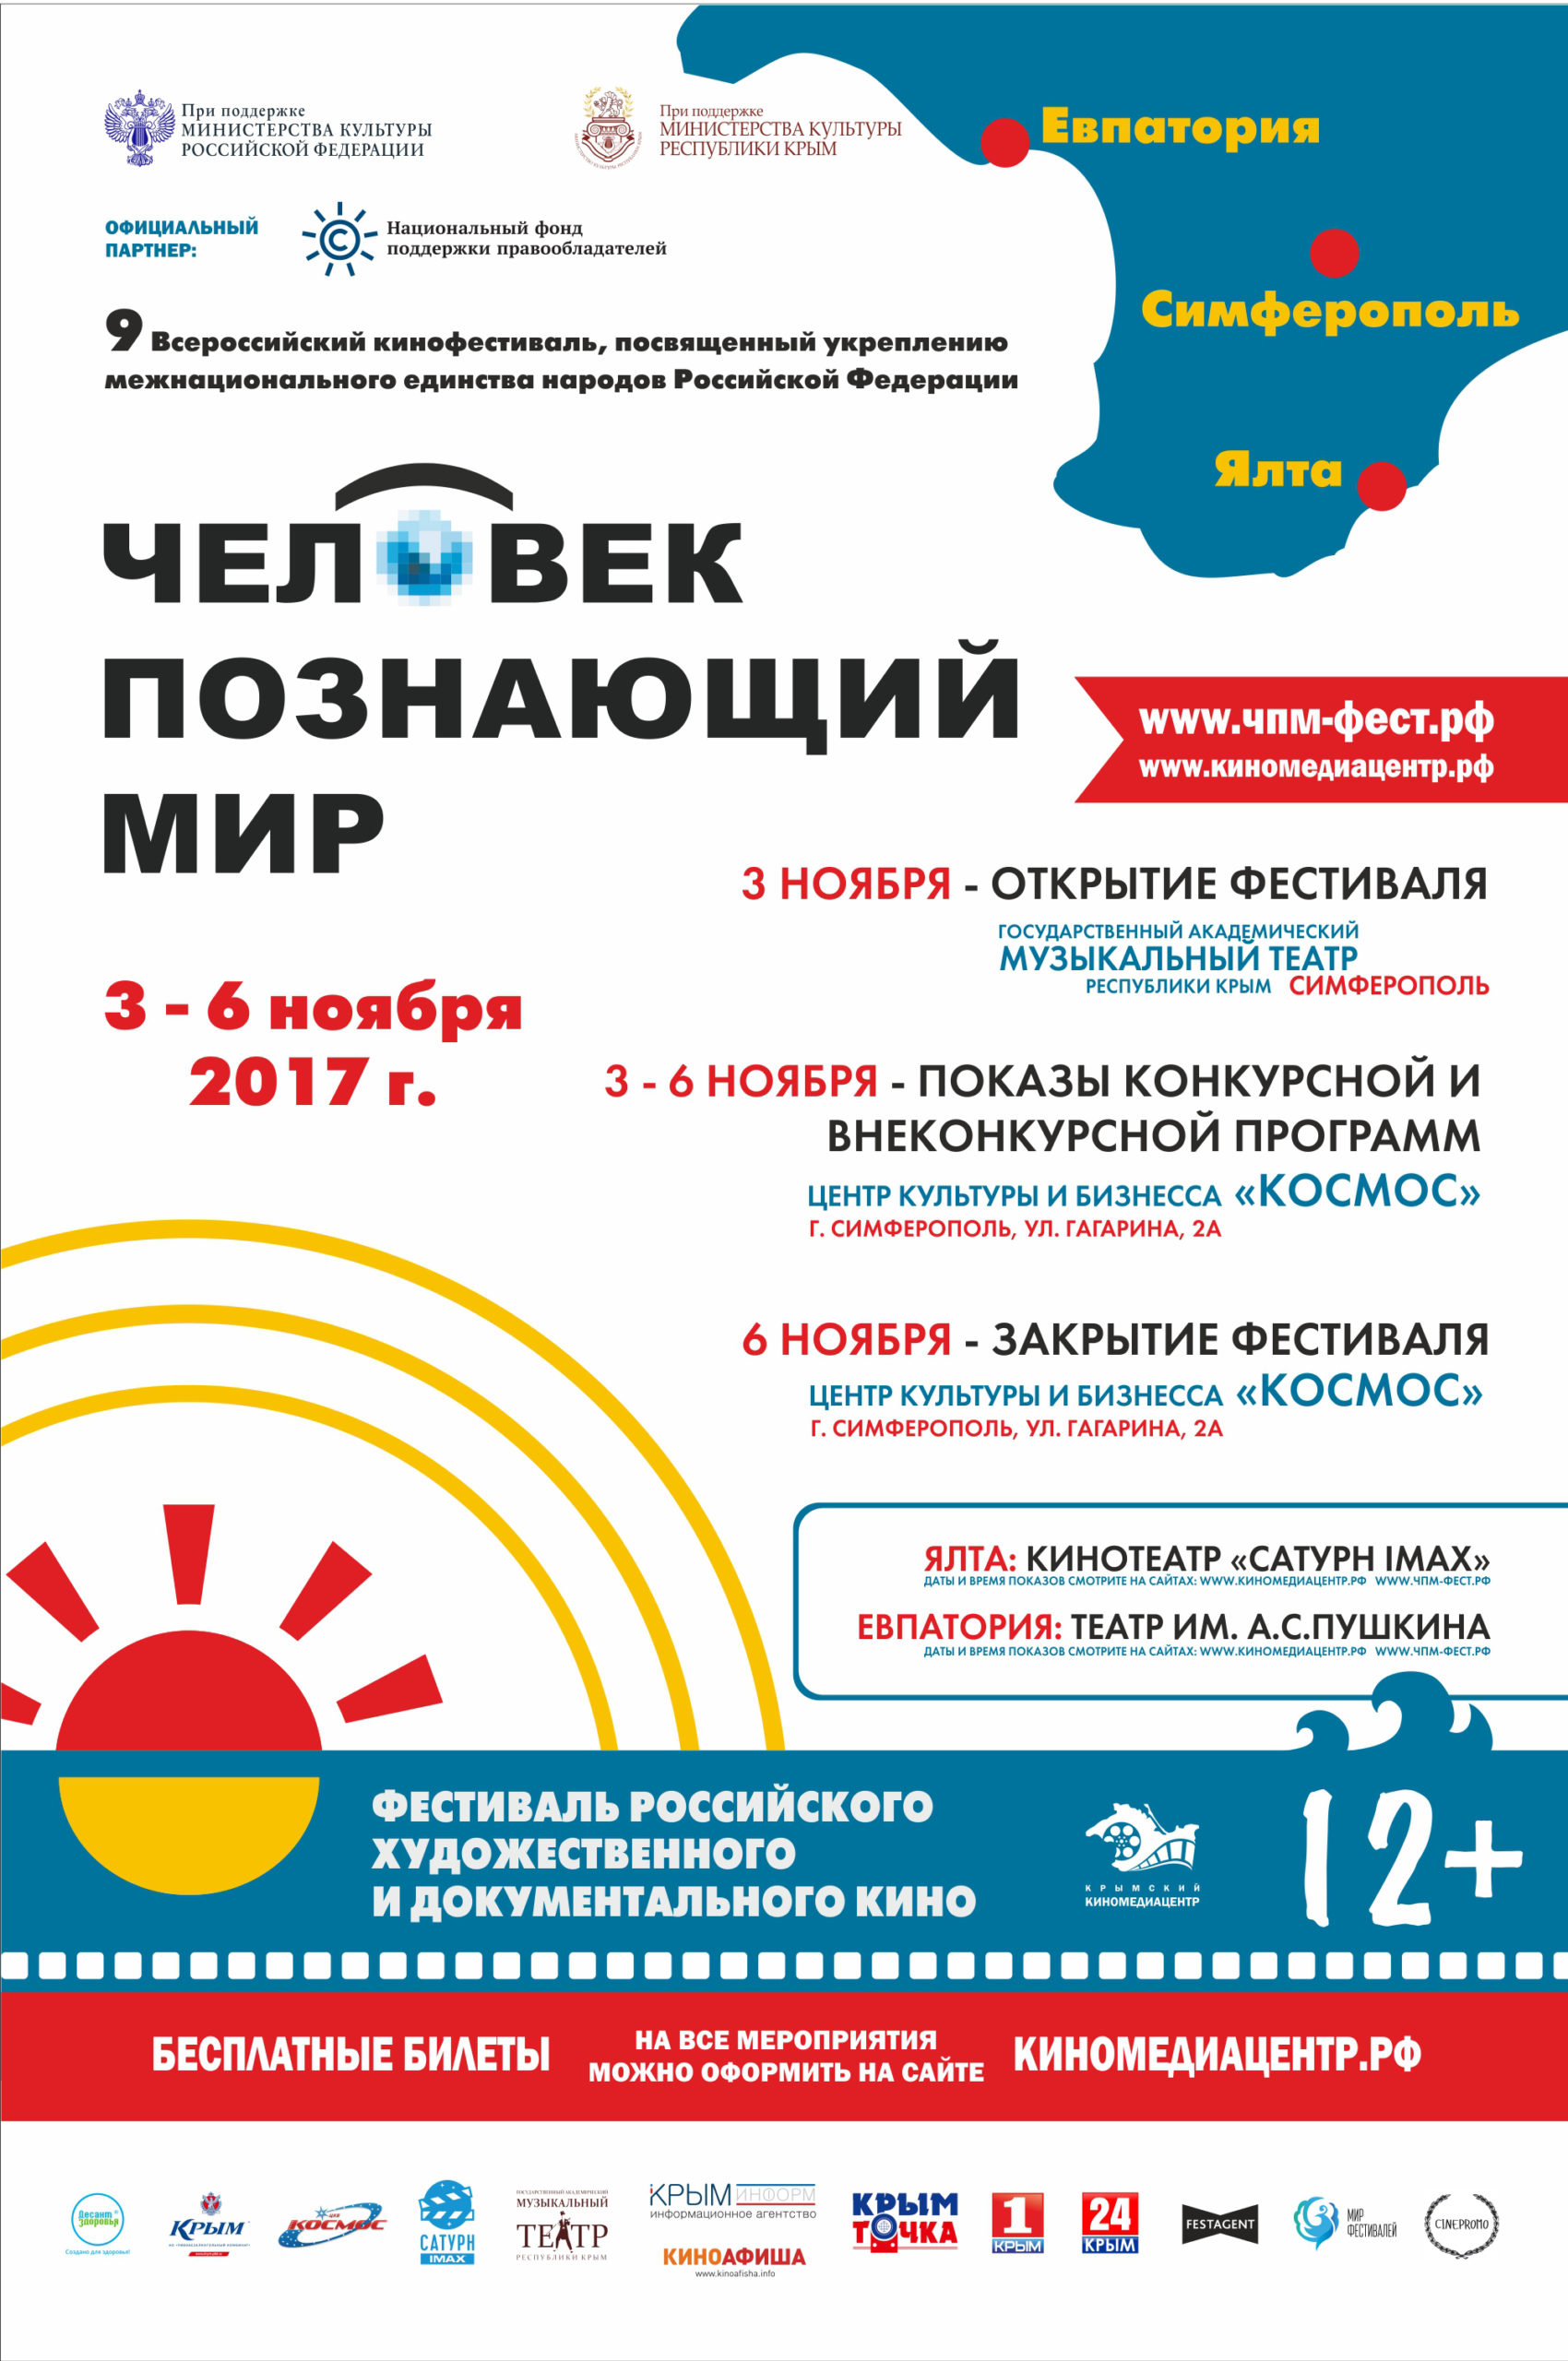 НФПП поддержит фестиваль российского кино в Крыму